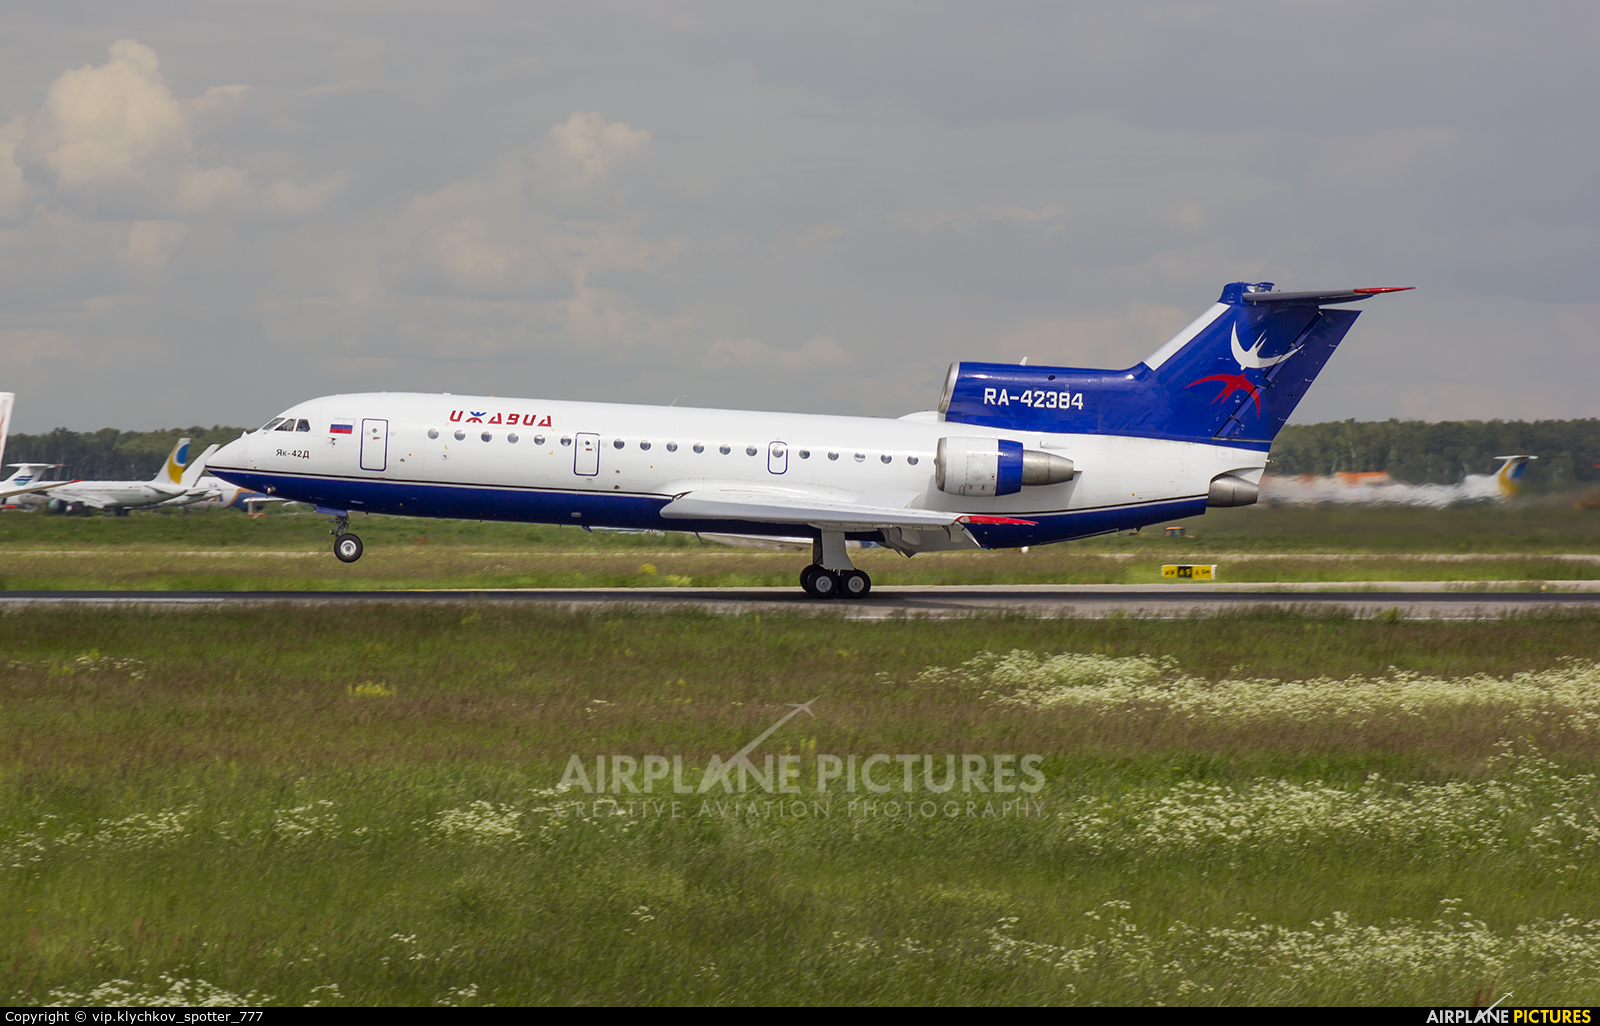 Izhavia RA-42384 aircraft at Moscow - Domodedovo